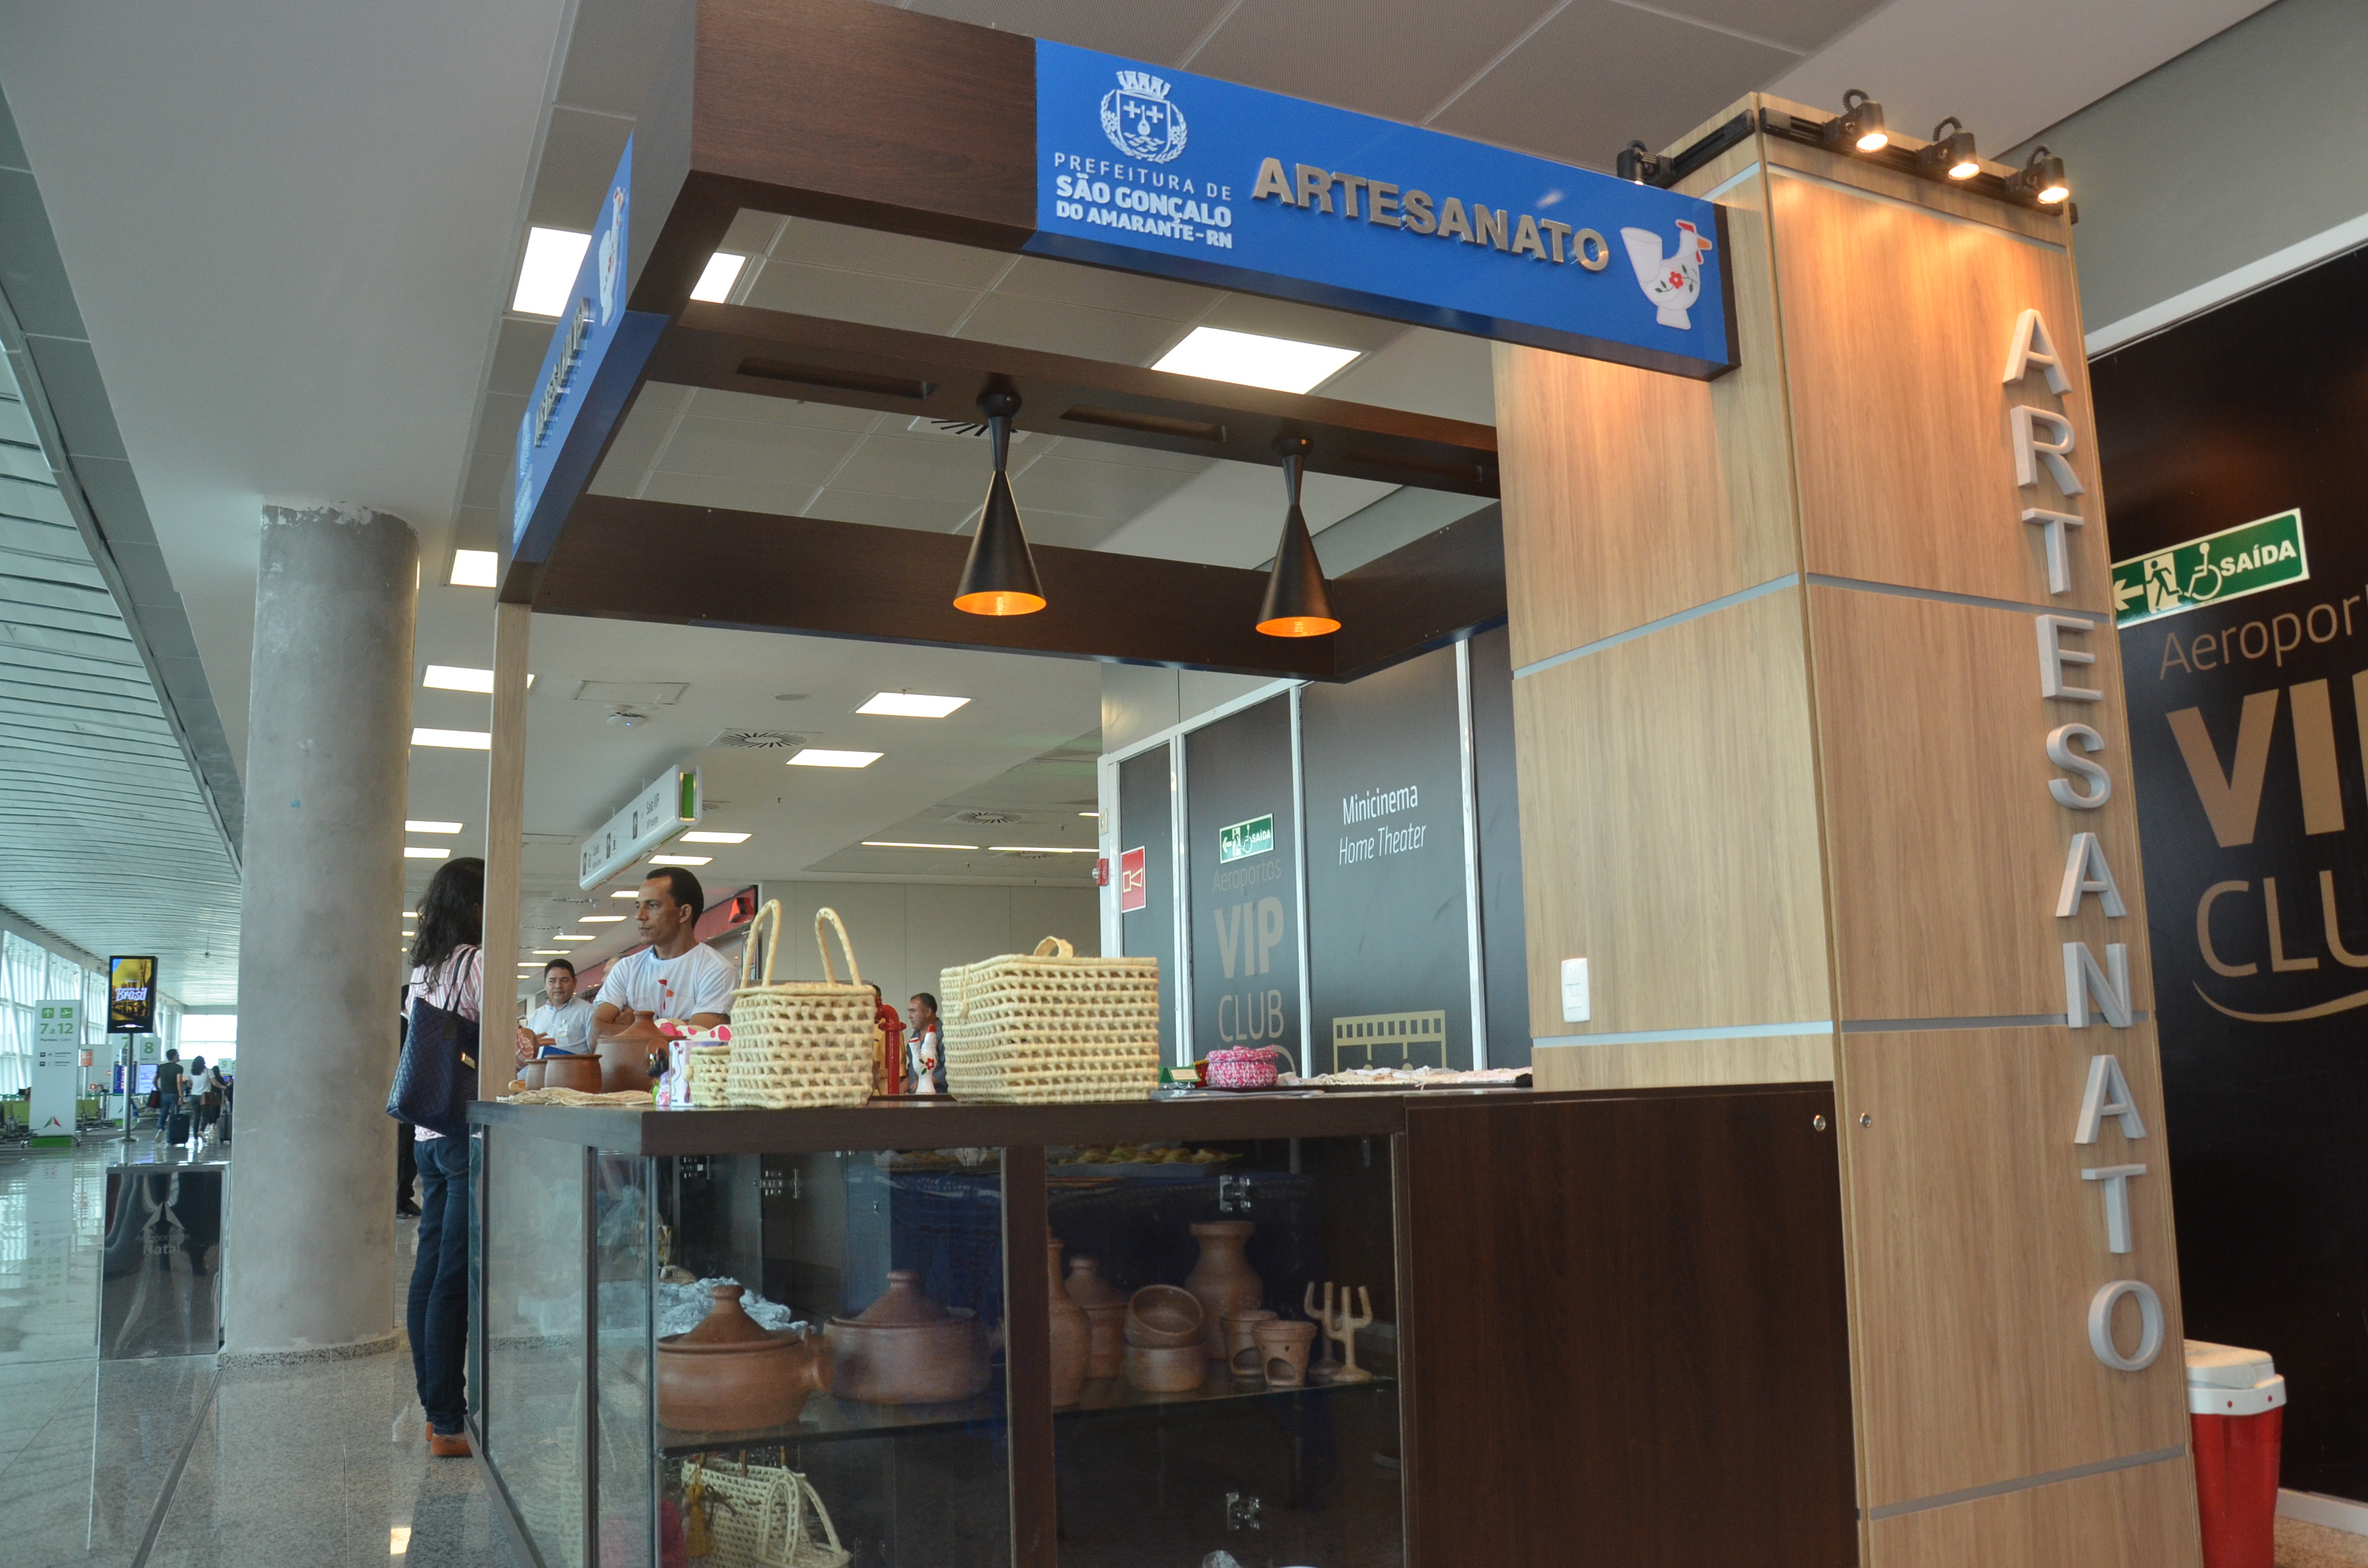 Prefeitura Municipal realiza entrega de quiosque de artesanato no Aeroporto Internacional Aluízio Alves